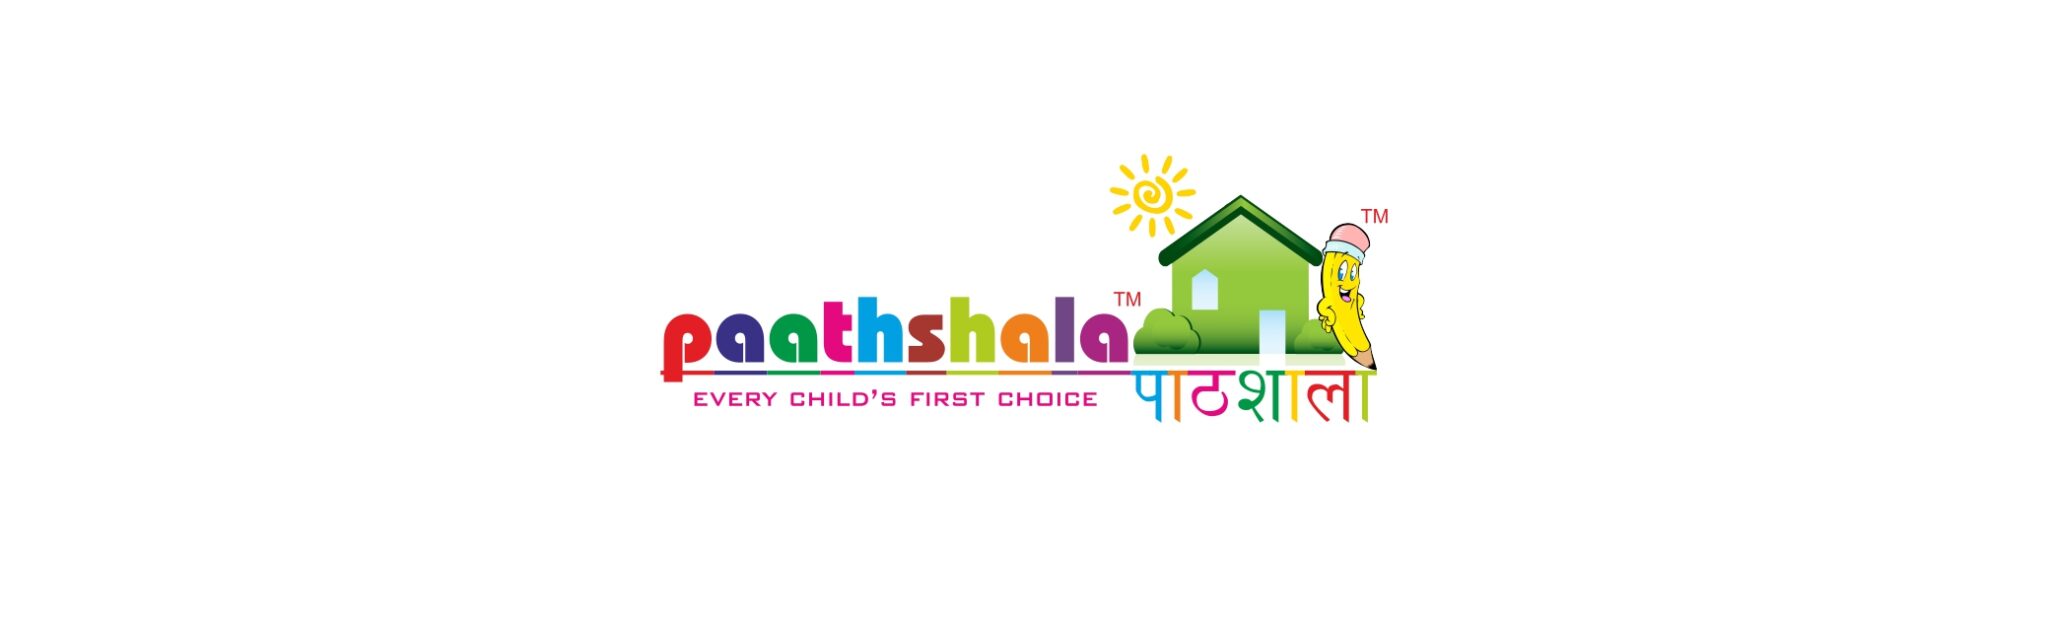 Top kindergarten playway schools near High Ground Road, Patiala Road, Zirakpur, Mohali